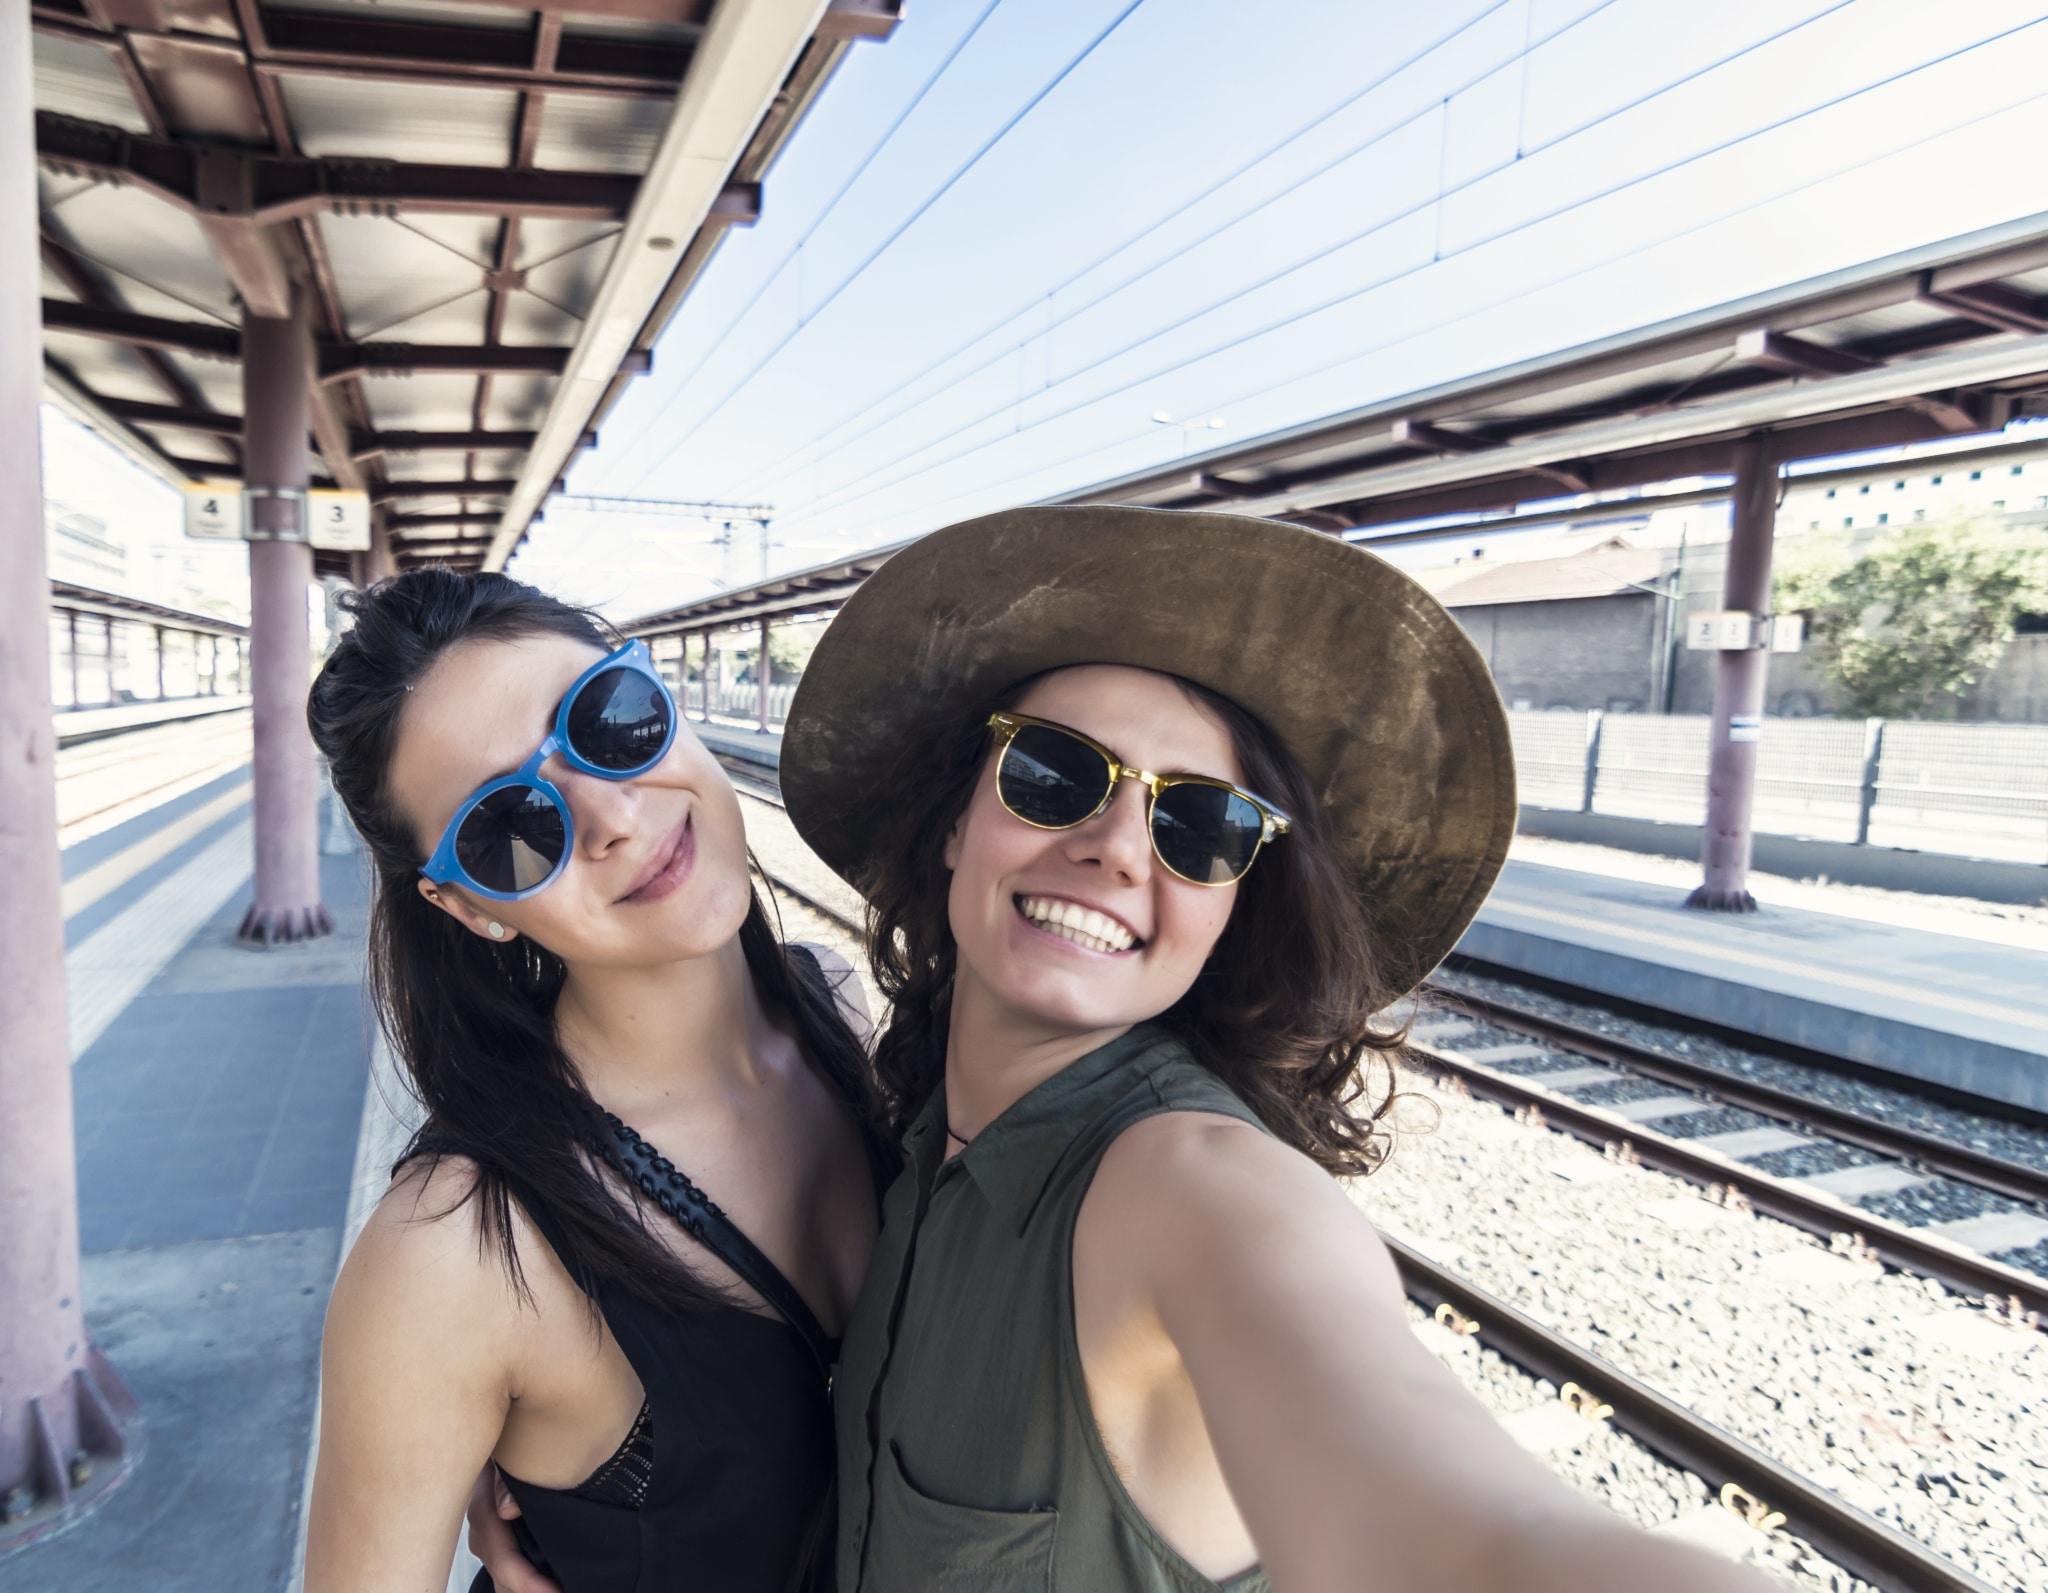 Zwei junge Frauen mit Sonnenbrillen und strahlendem Lächeln machen ein Selfie am Bahnhof, dahinter Schienen.